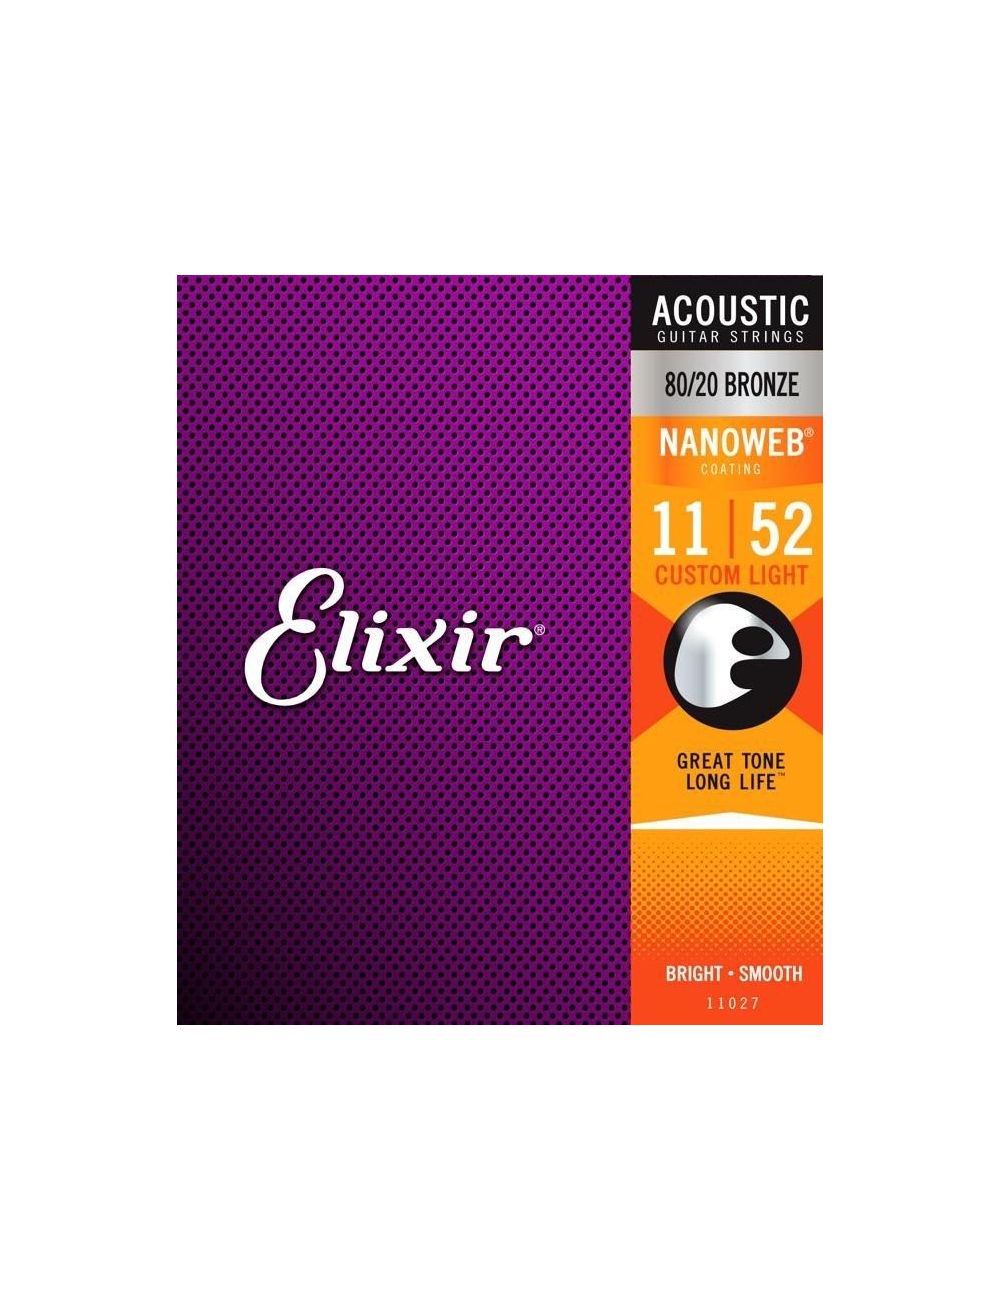 Acoustic guitar strings Elixir 80/20 Bronze 11-52 - Pack of 3 sets 16538 Guitar strings